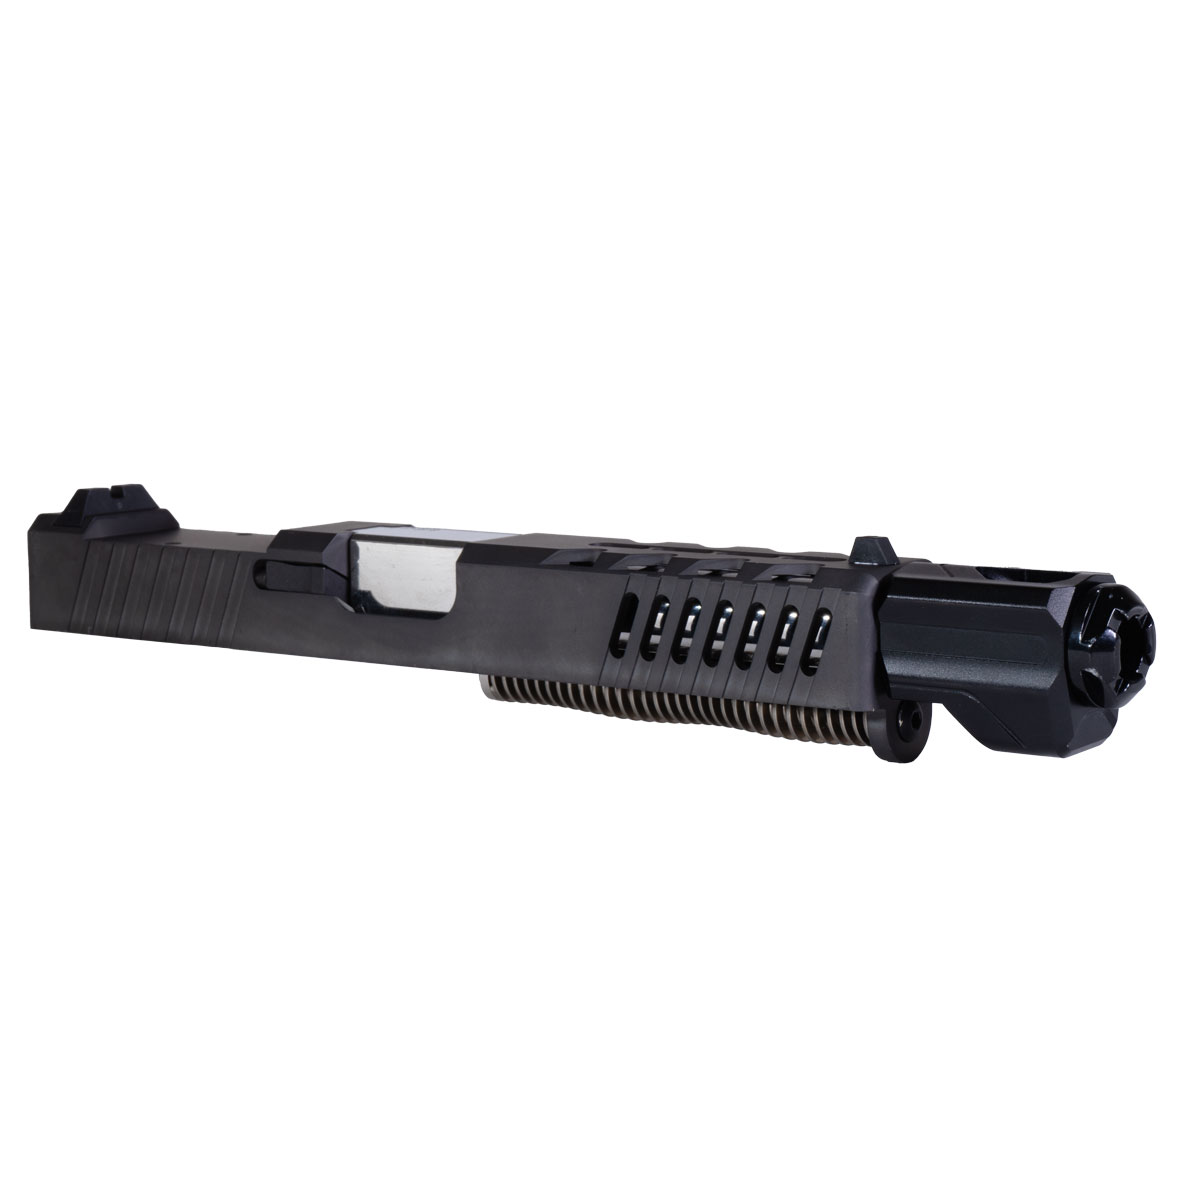 DTT 'Fastlink' 9mm Complete Slide Kit - Glock 17 Gen 1-3 Compatible